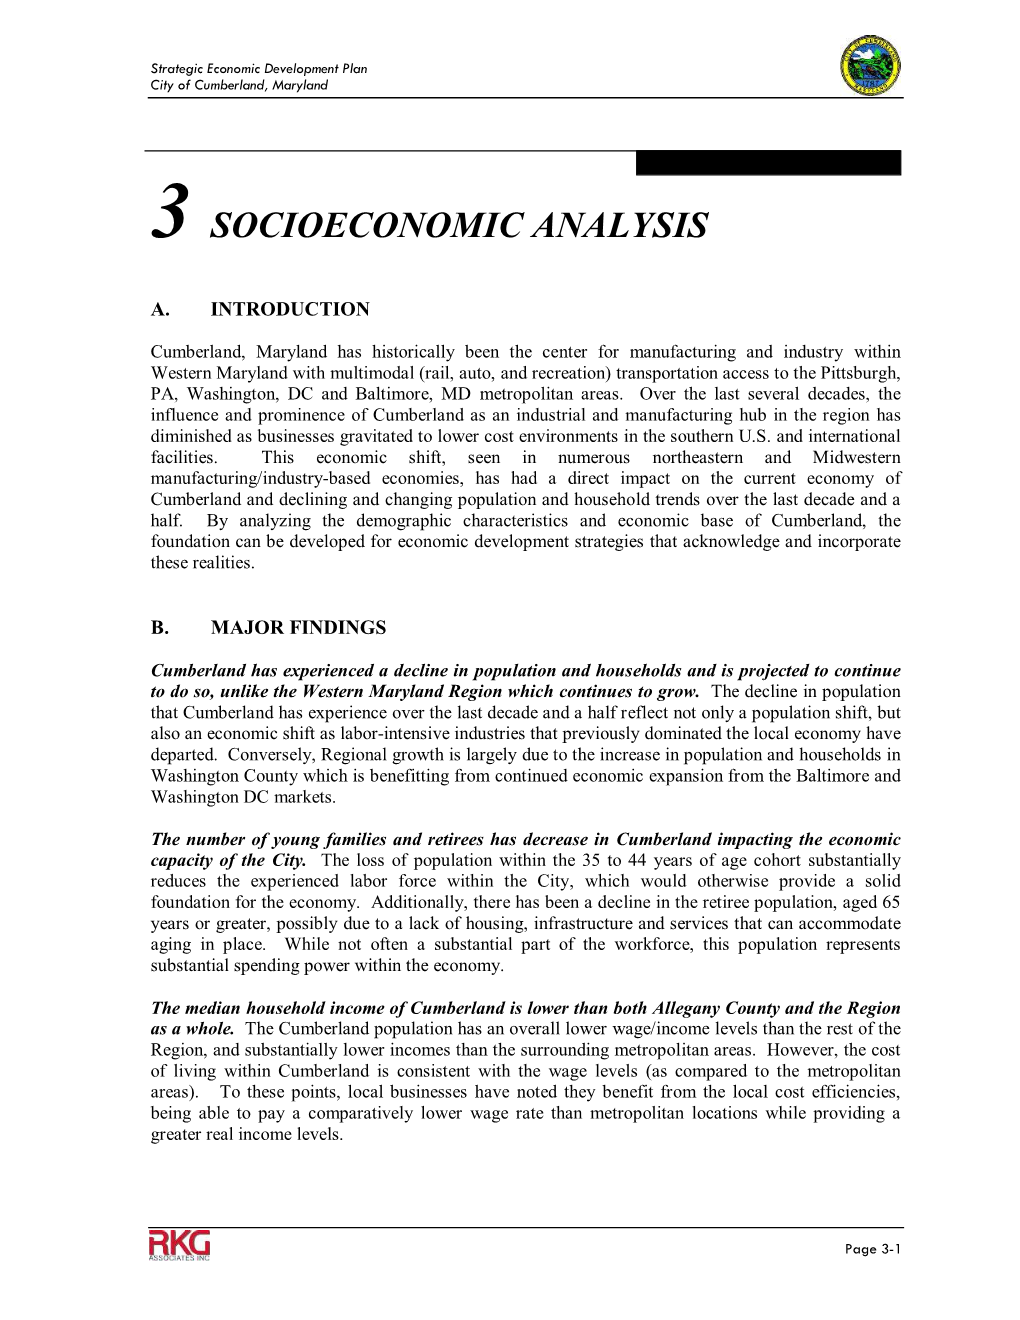 3 Socioeconomic Analysis